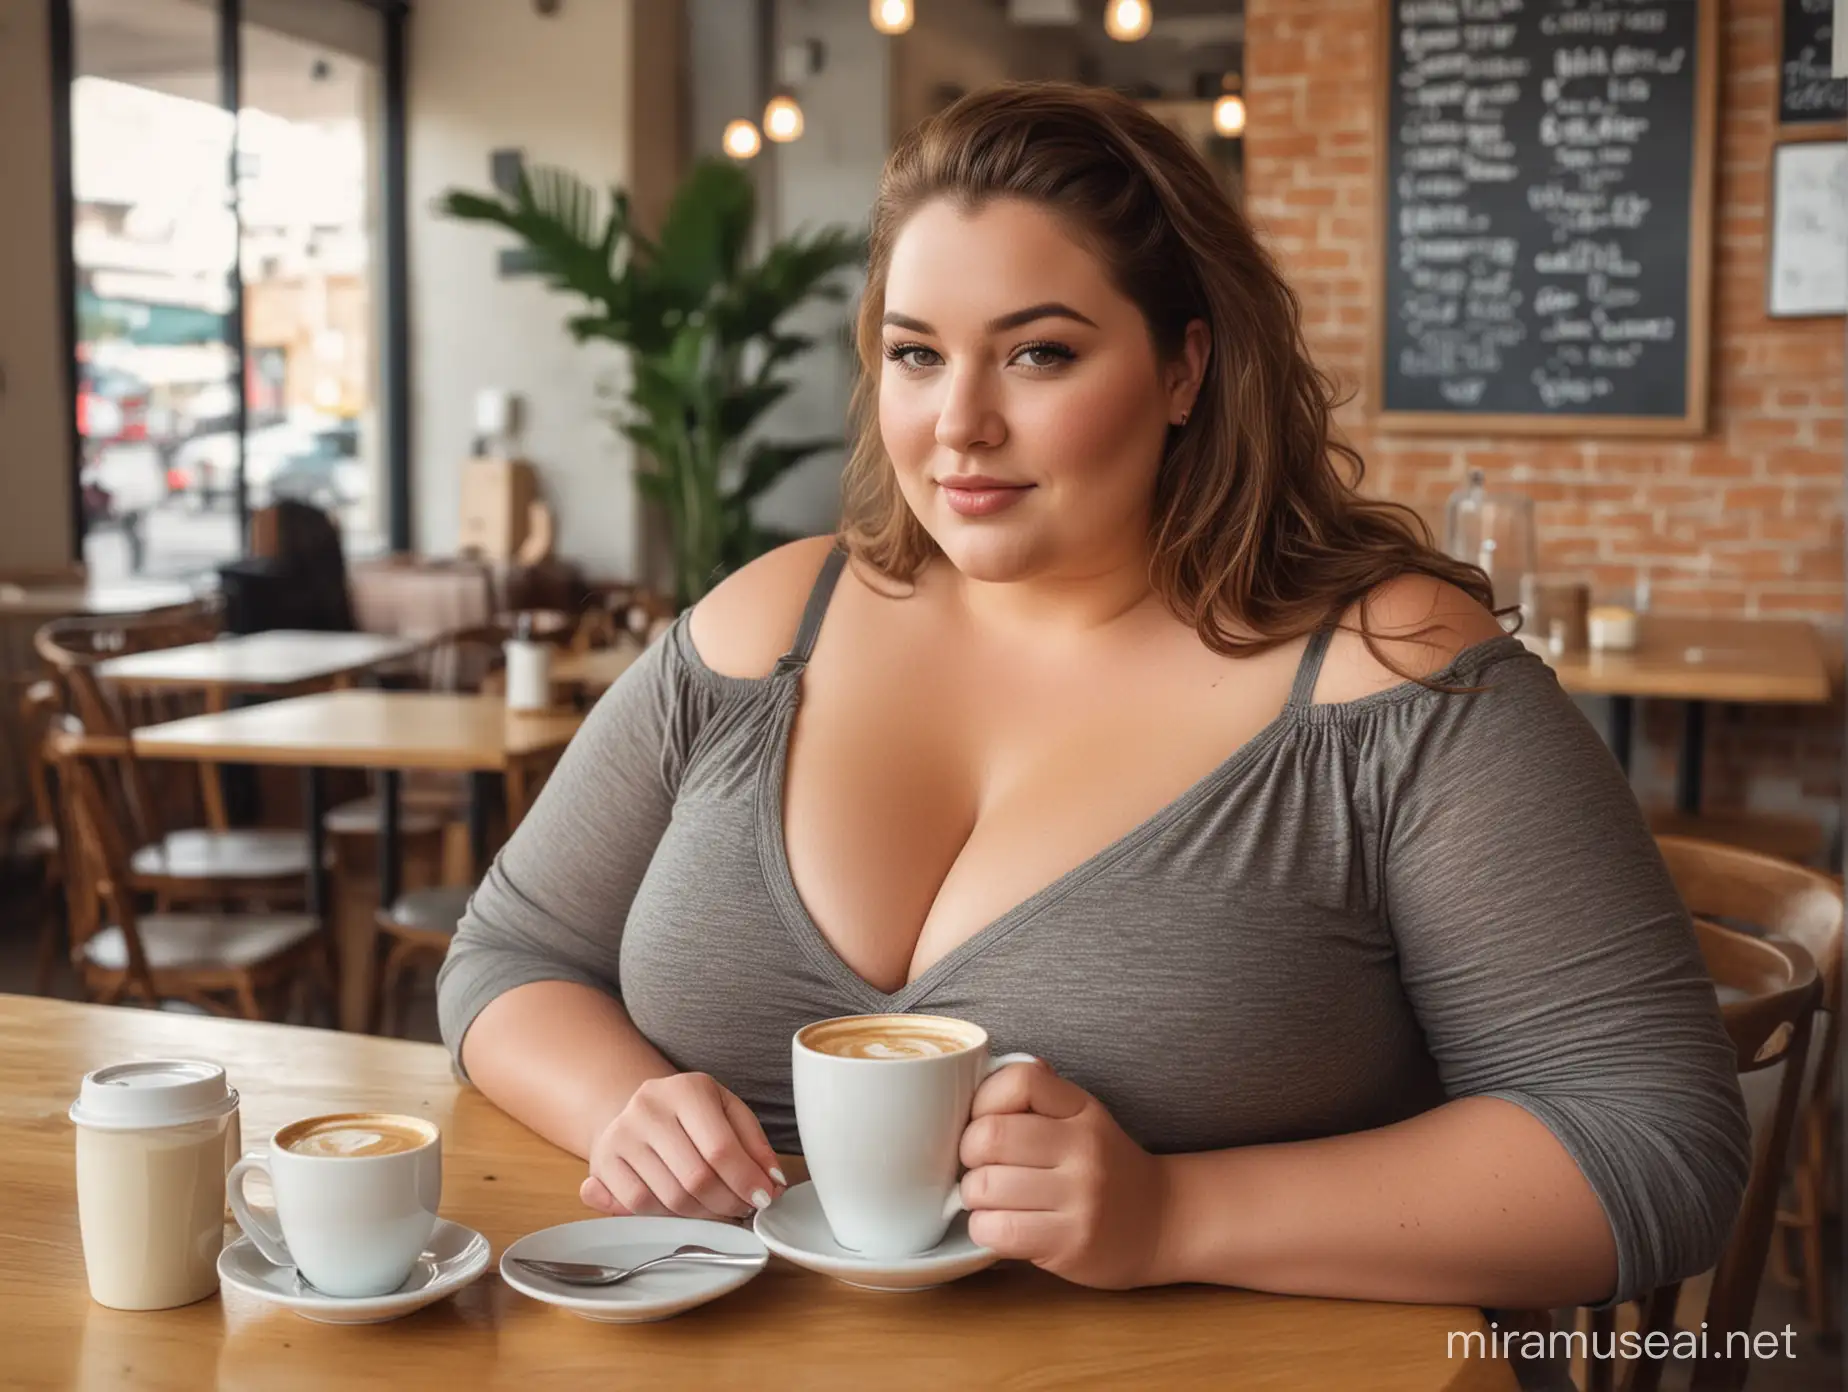 Stylish Curvy Woman Enjoying Coffee at a Charming Cafe